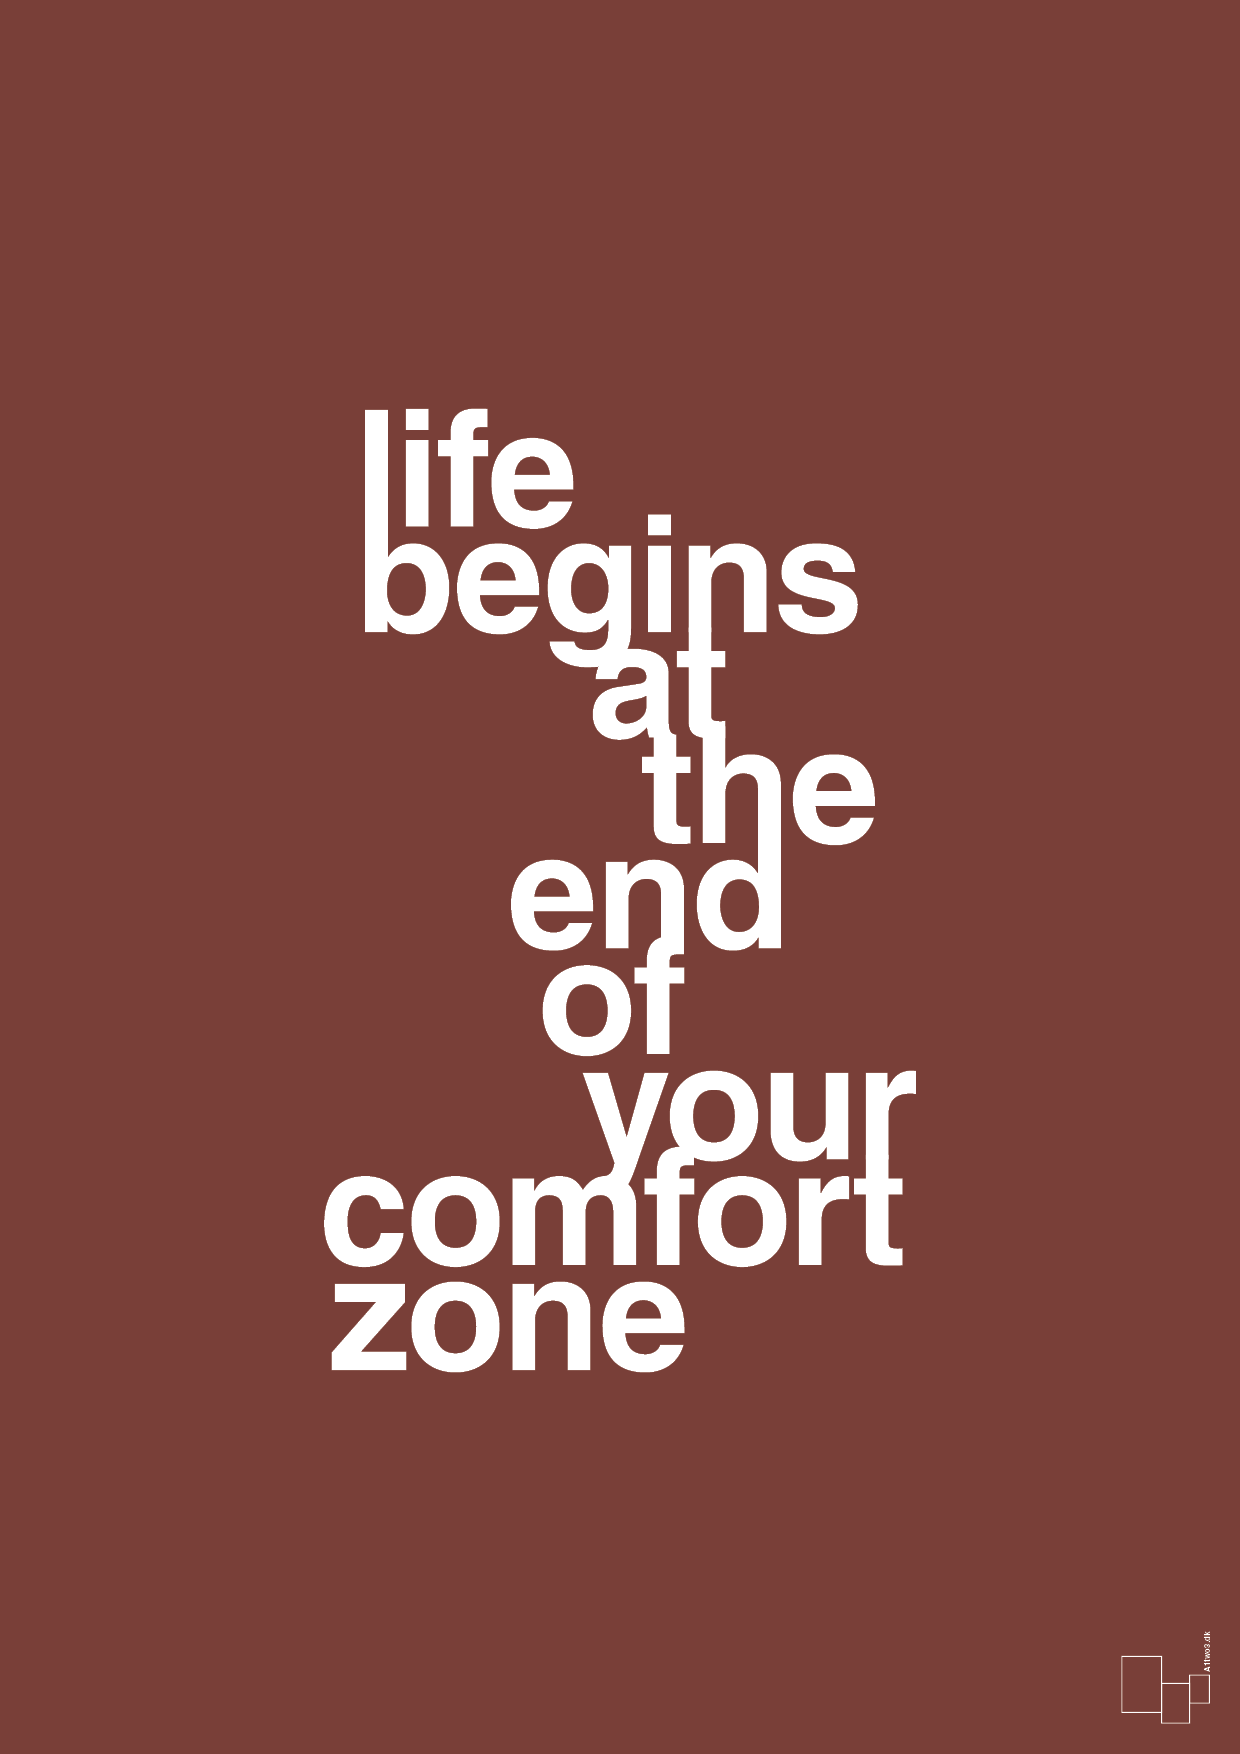 life begins at the end of your comfort zone - Plakat med Ordsprog i Red Pepper